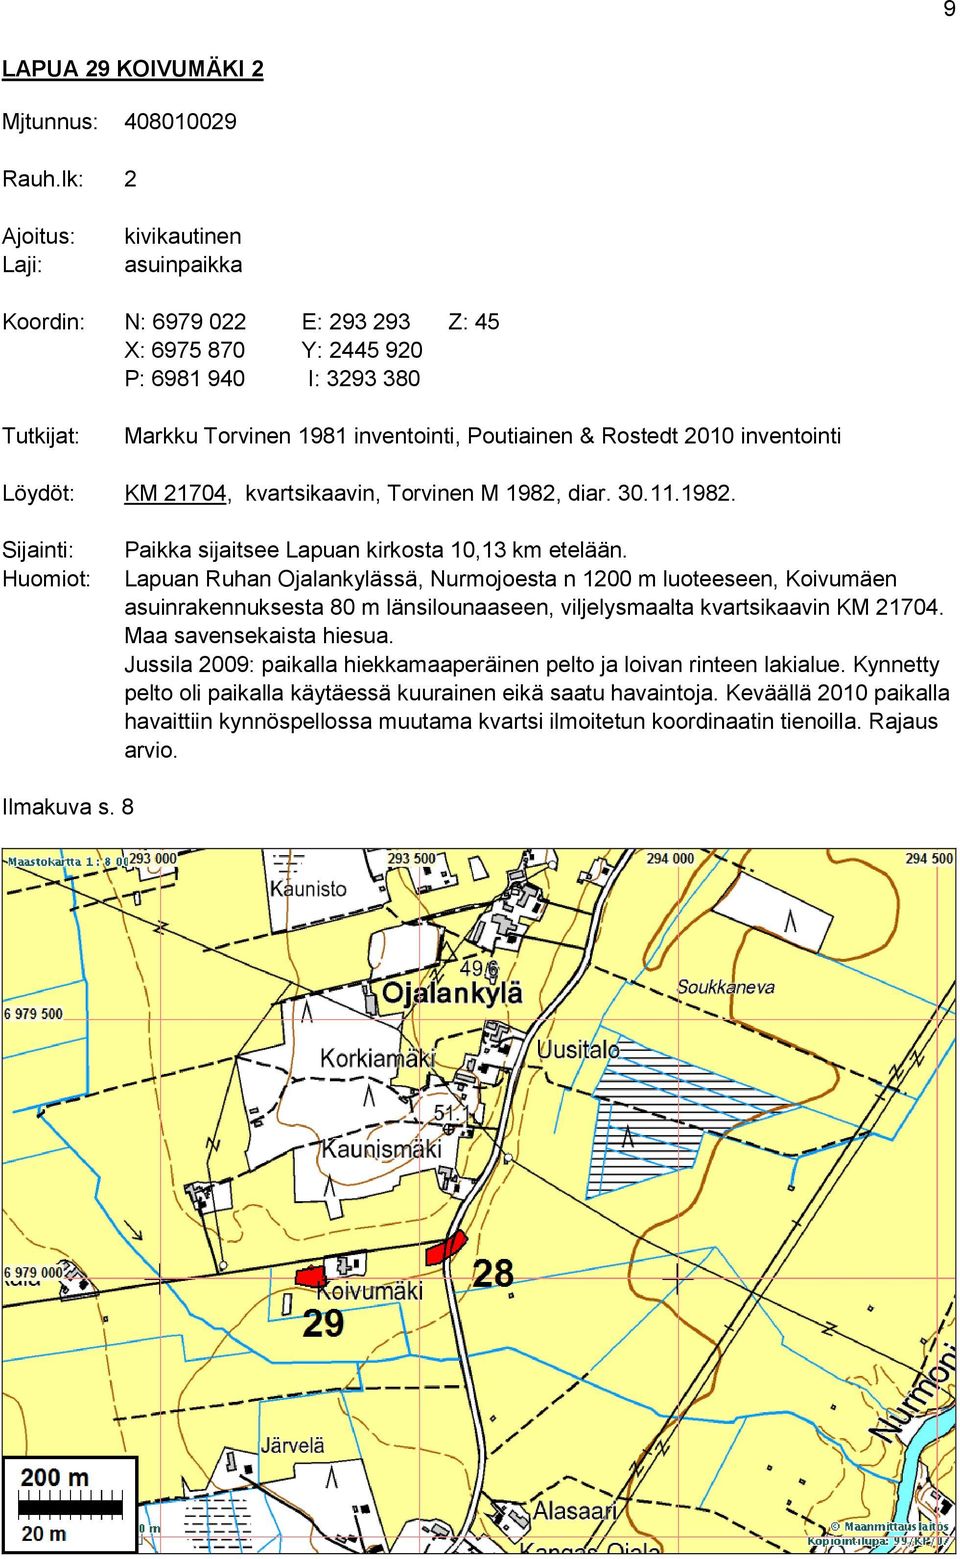 2010 inventointi Löydöt: KM 21704, kvartsikaavin, Torvinen M 1982, diar. 30.11.1982. Sijainti: Huomiot: Paikka sijaitsee Lapuan kirkosta 10,13 km etelään.